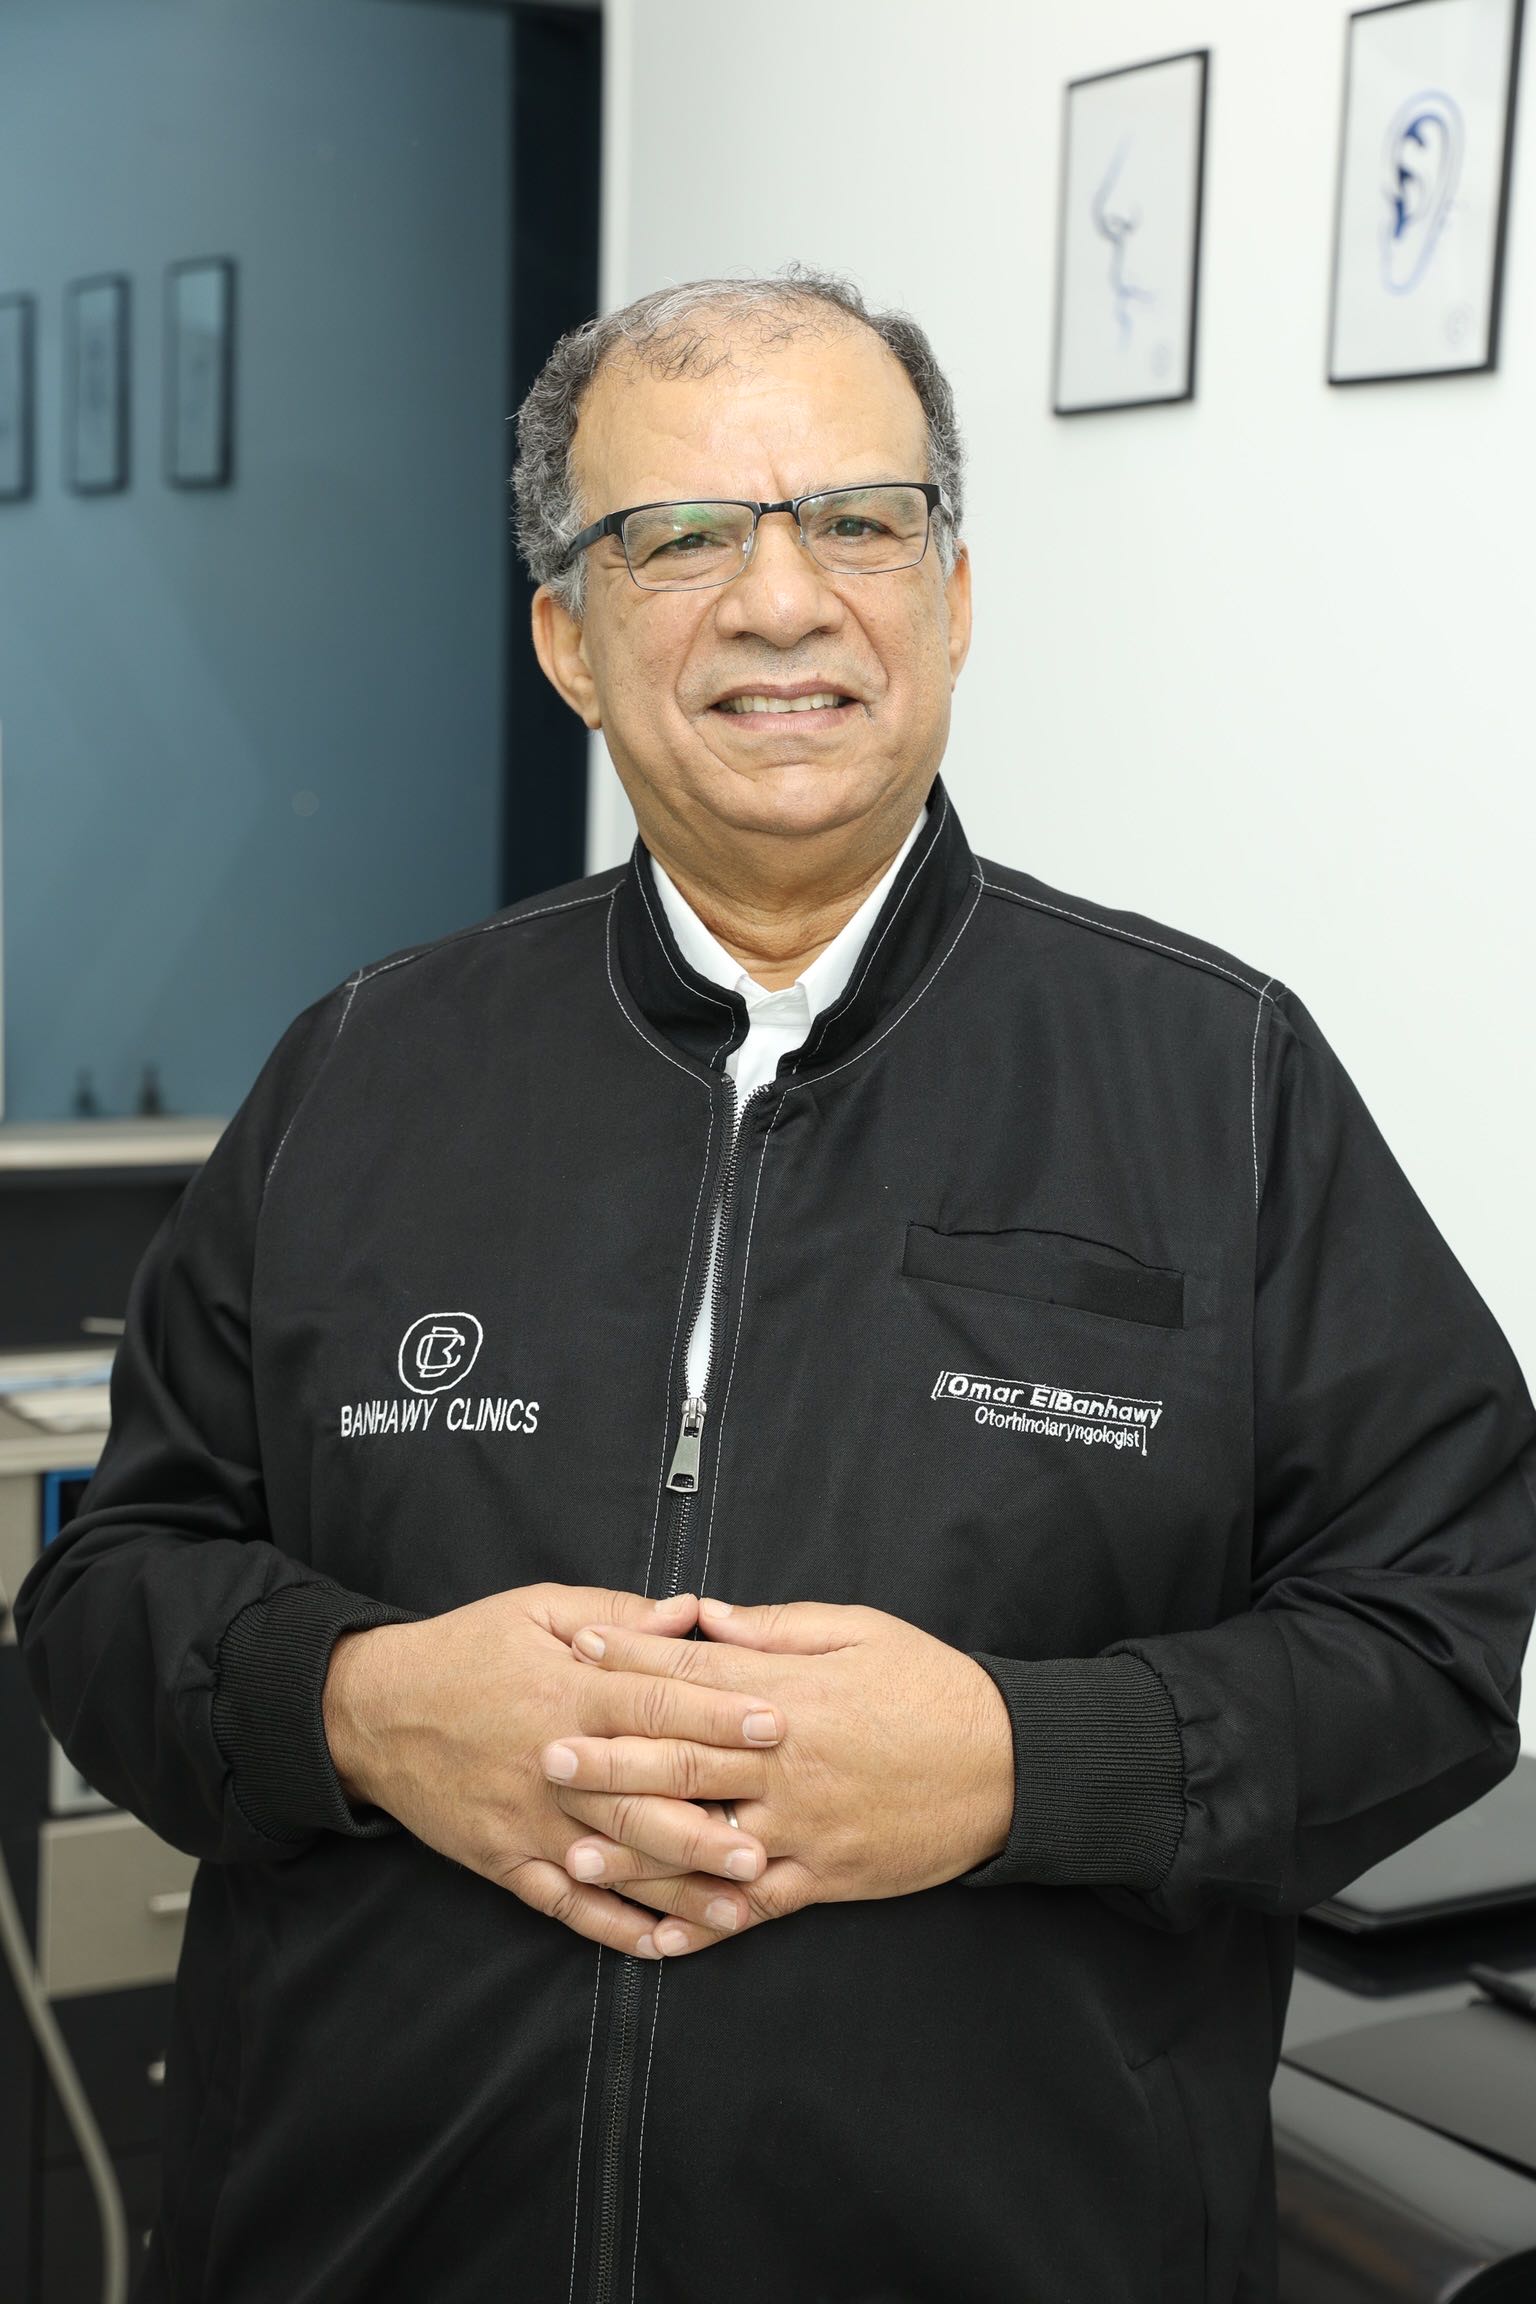 Dr. Omar Elbanhawy